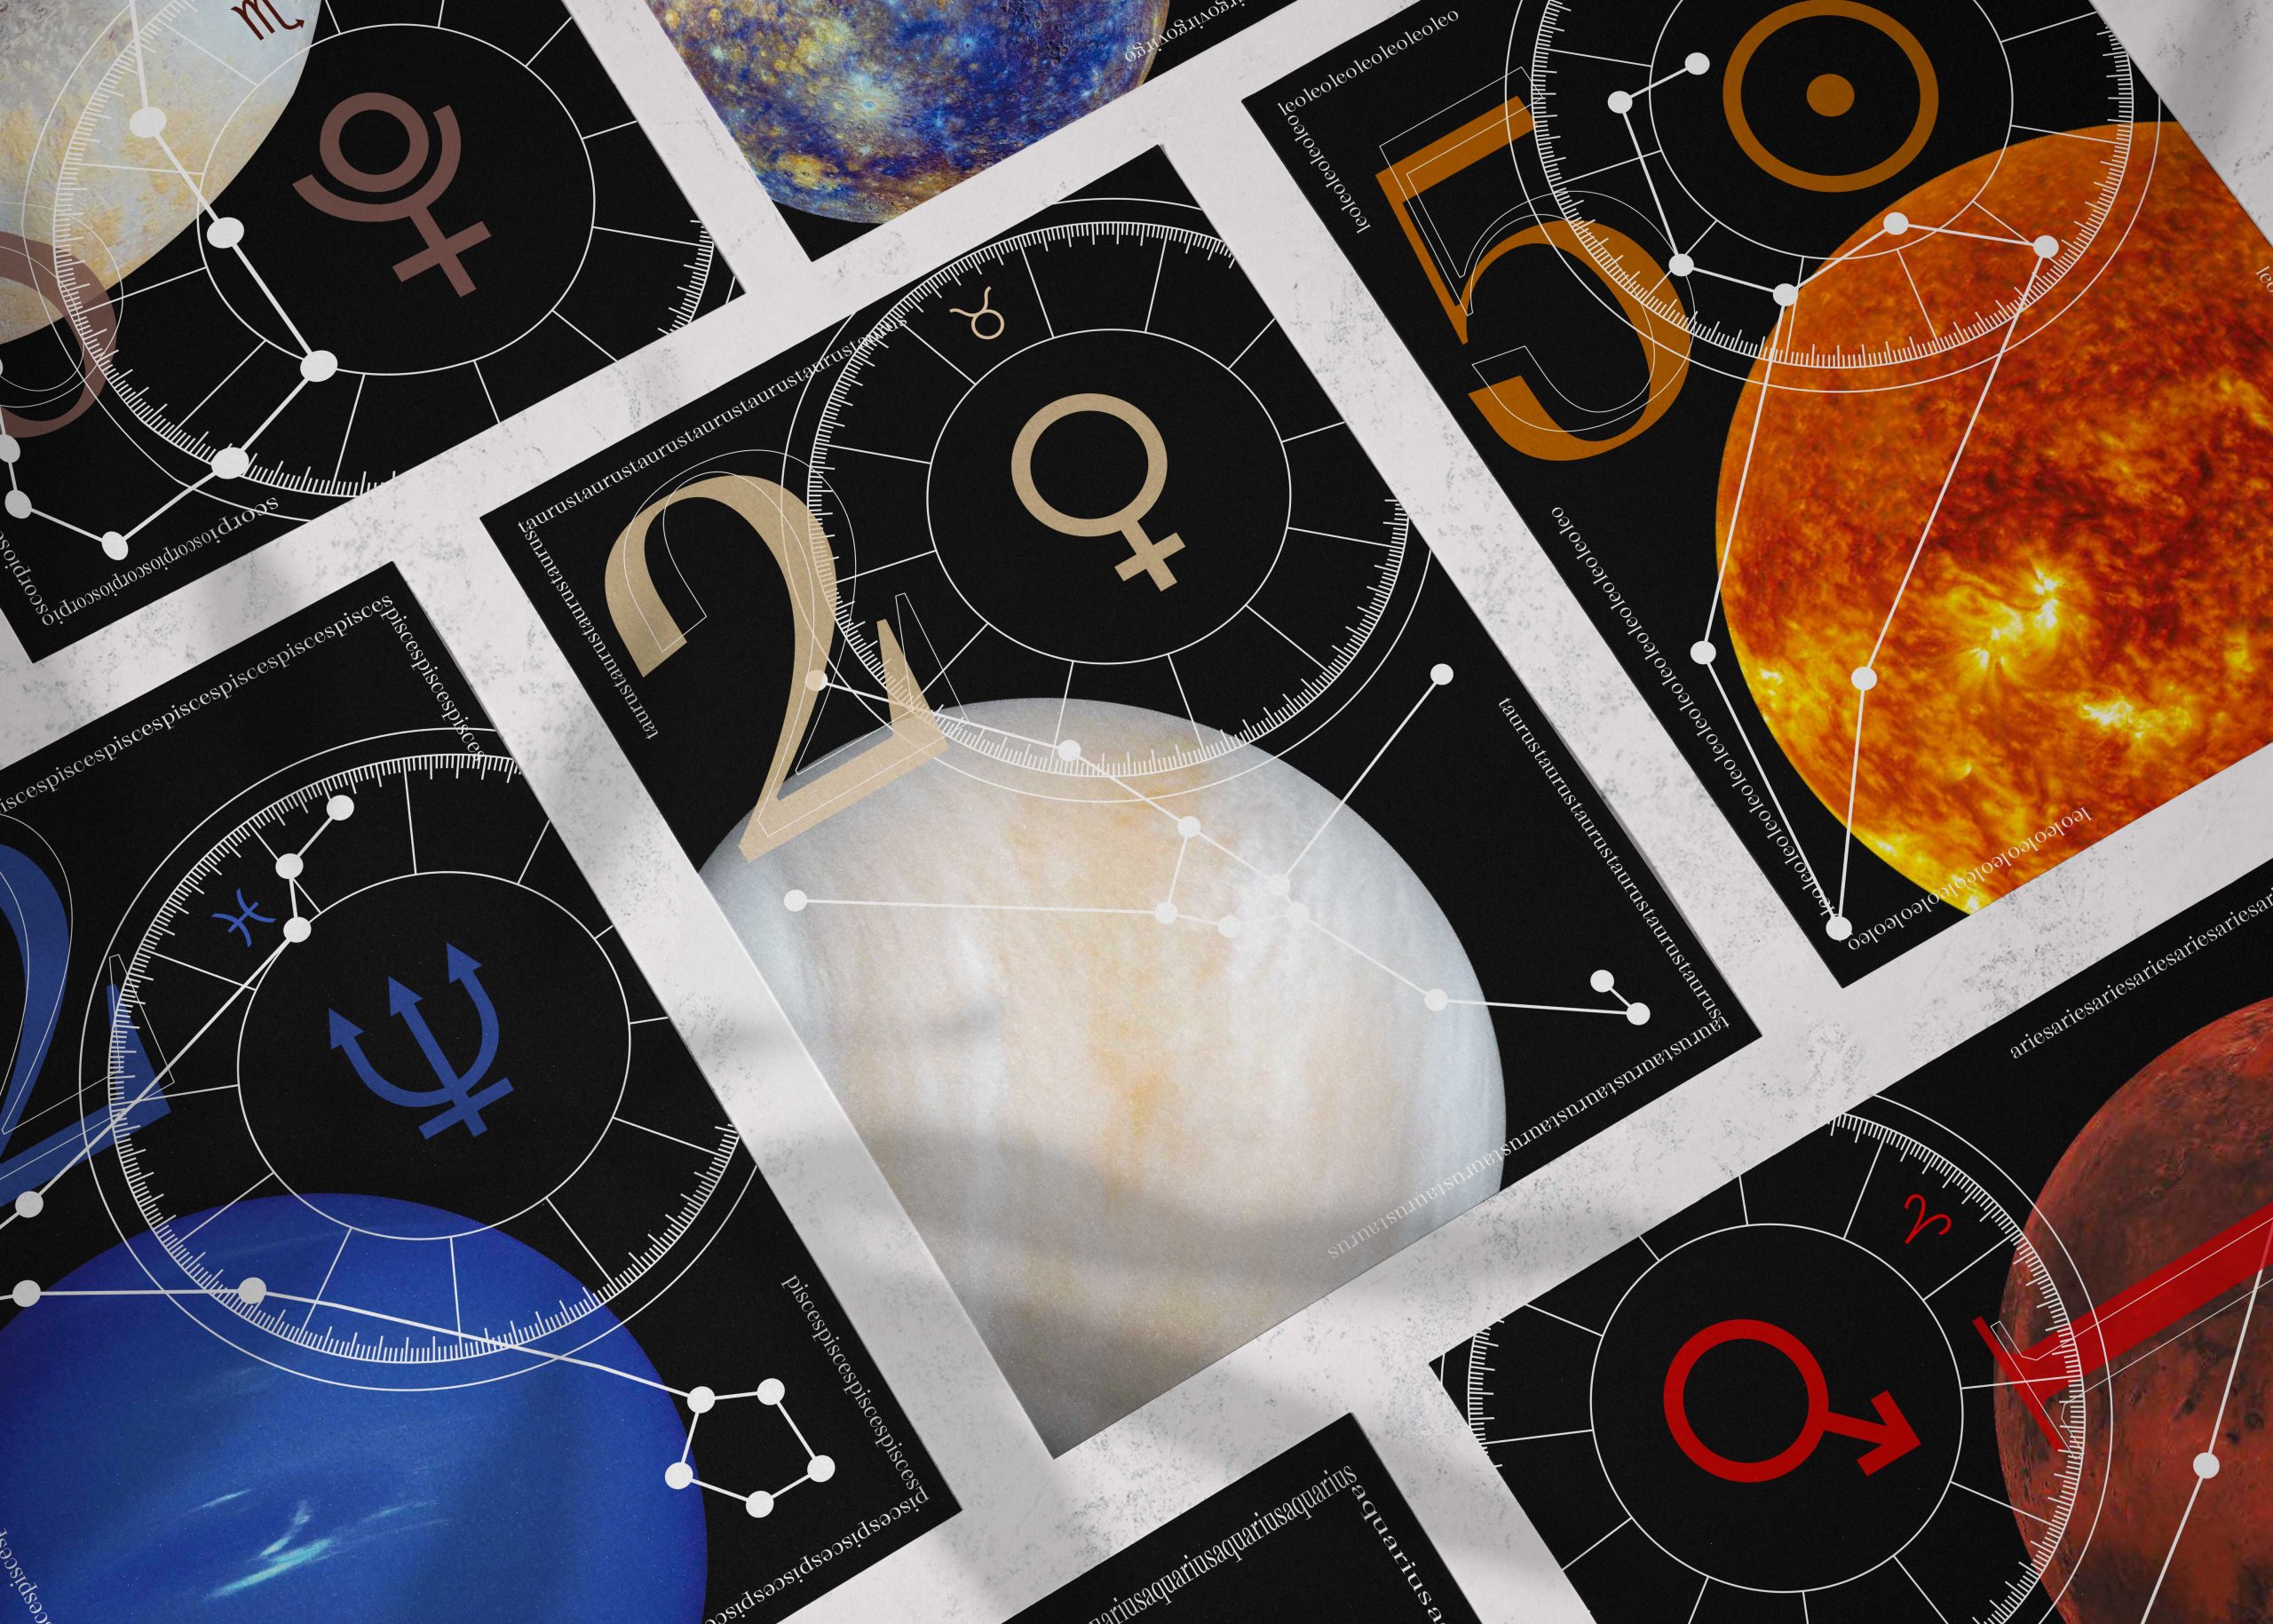 Grille de poster montrant plusieurs déclinaison des affiches du projets "Postermania #3 - Astrologia"